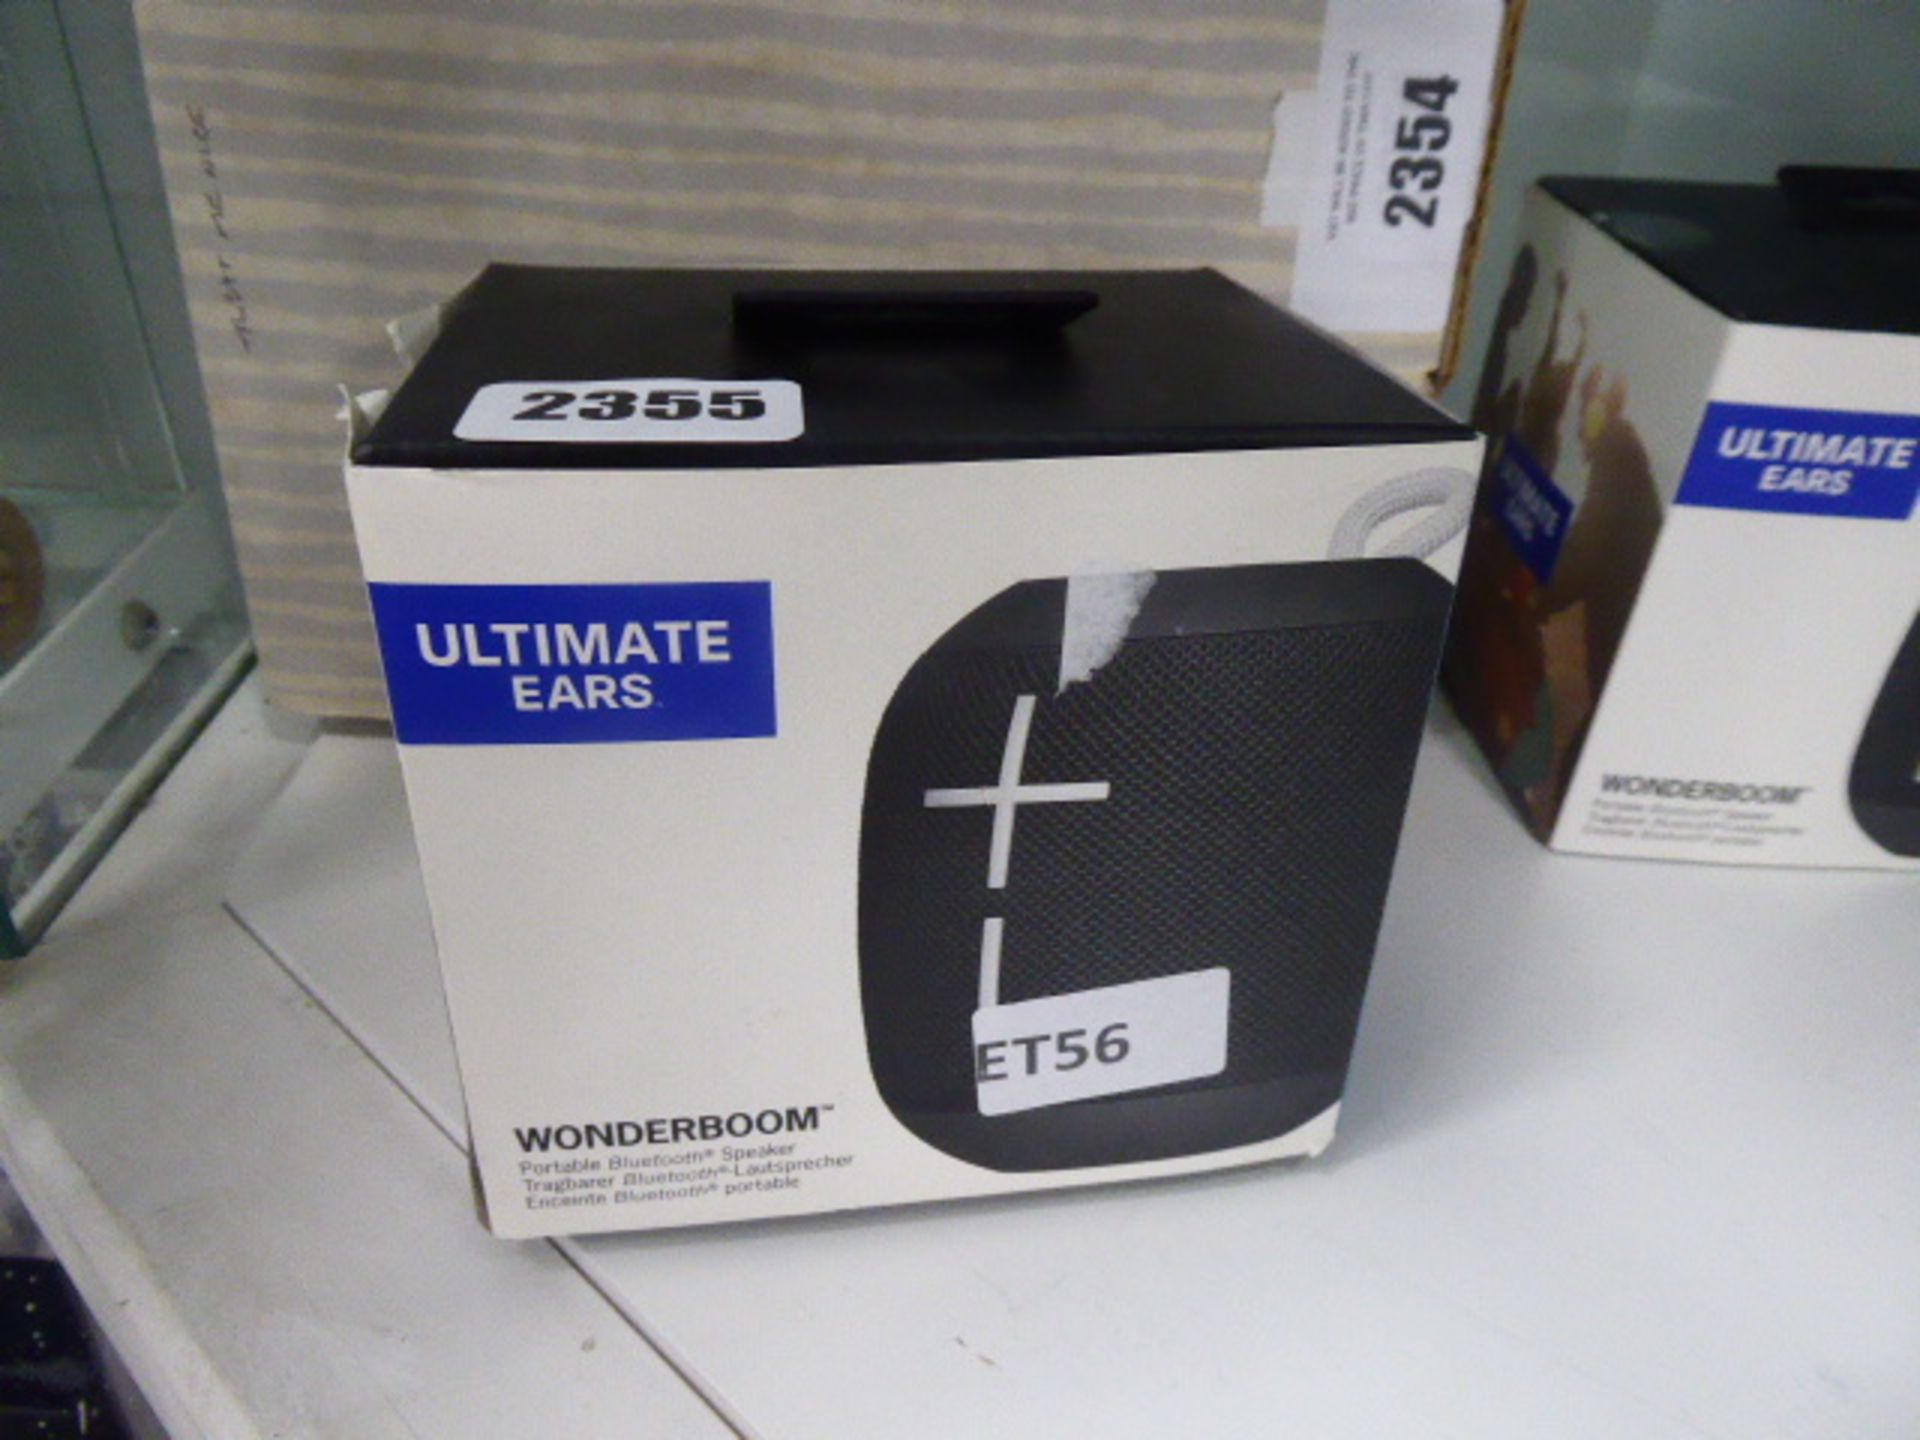 Ultimate Ears Wonderboom portable bluetooth speaker in box